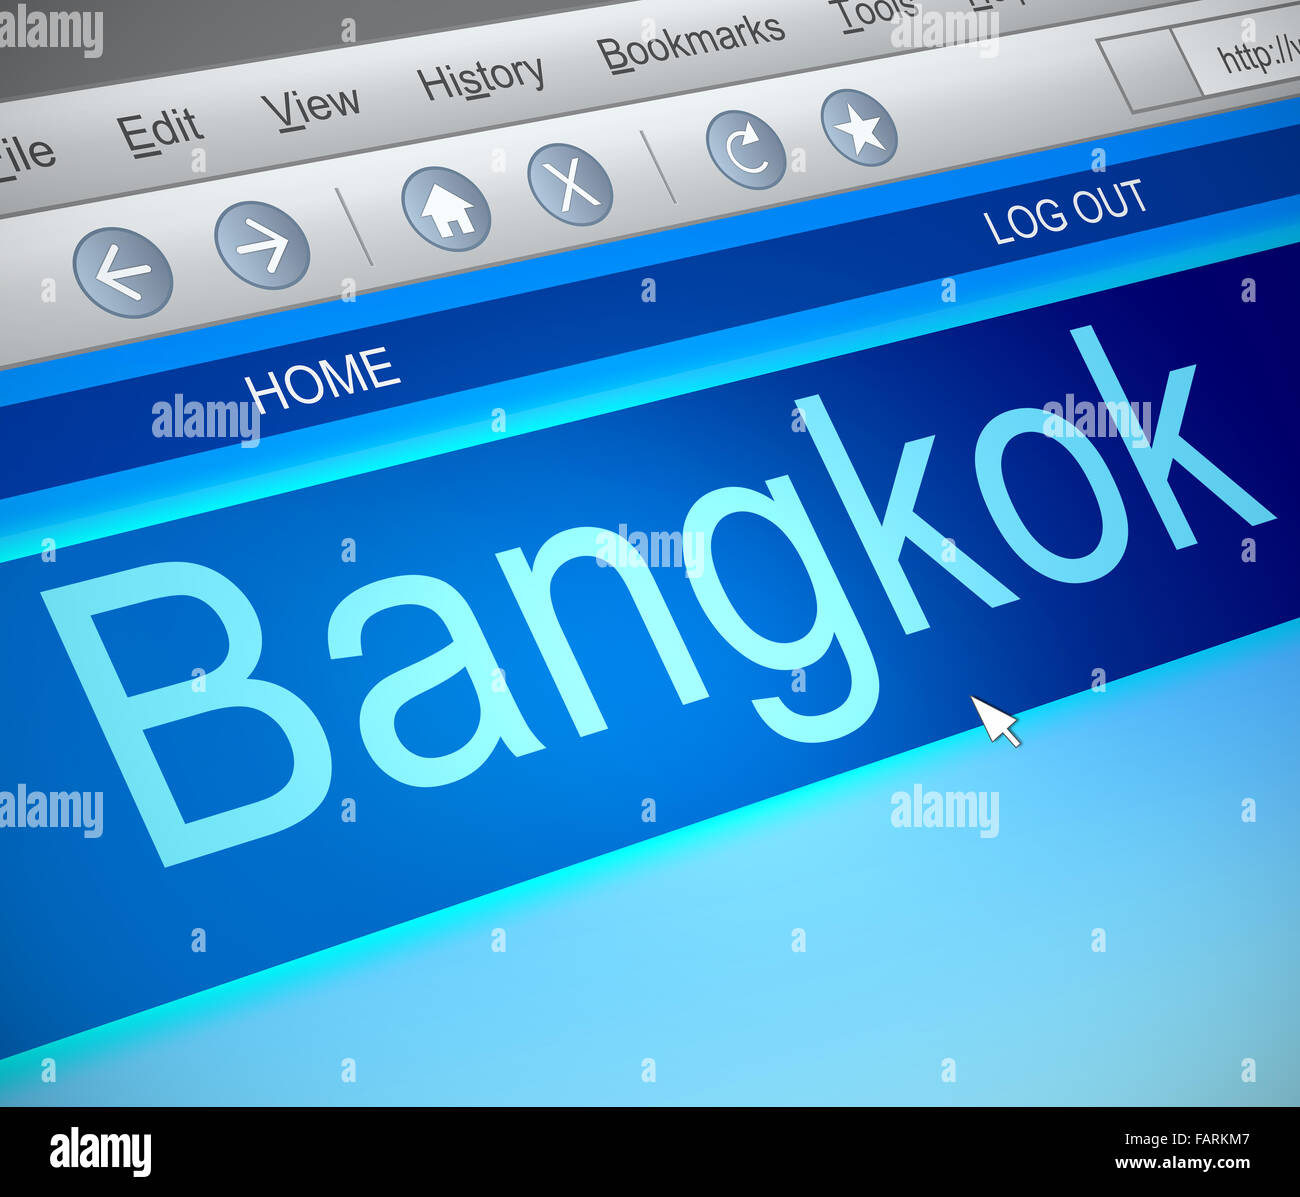 Bangkok concept. Stock Photo